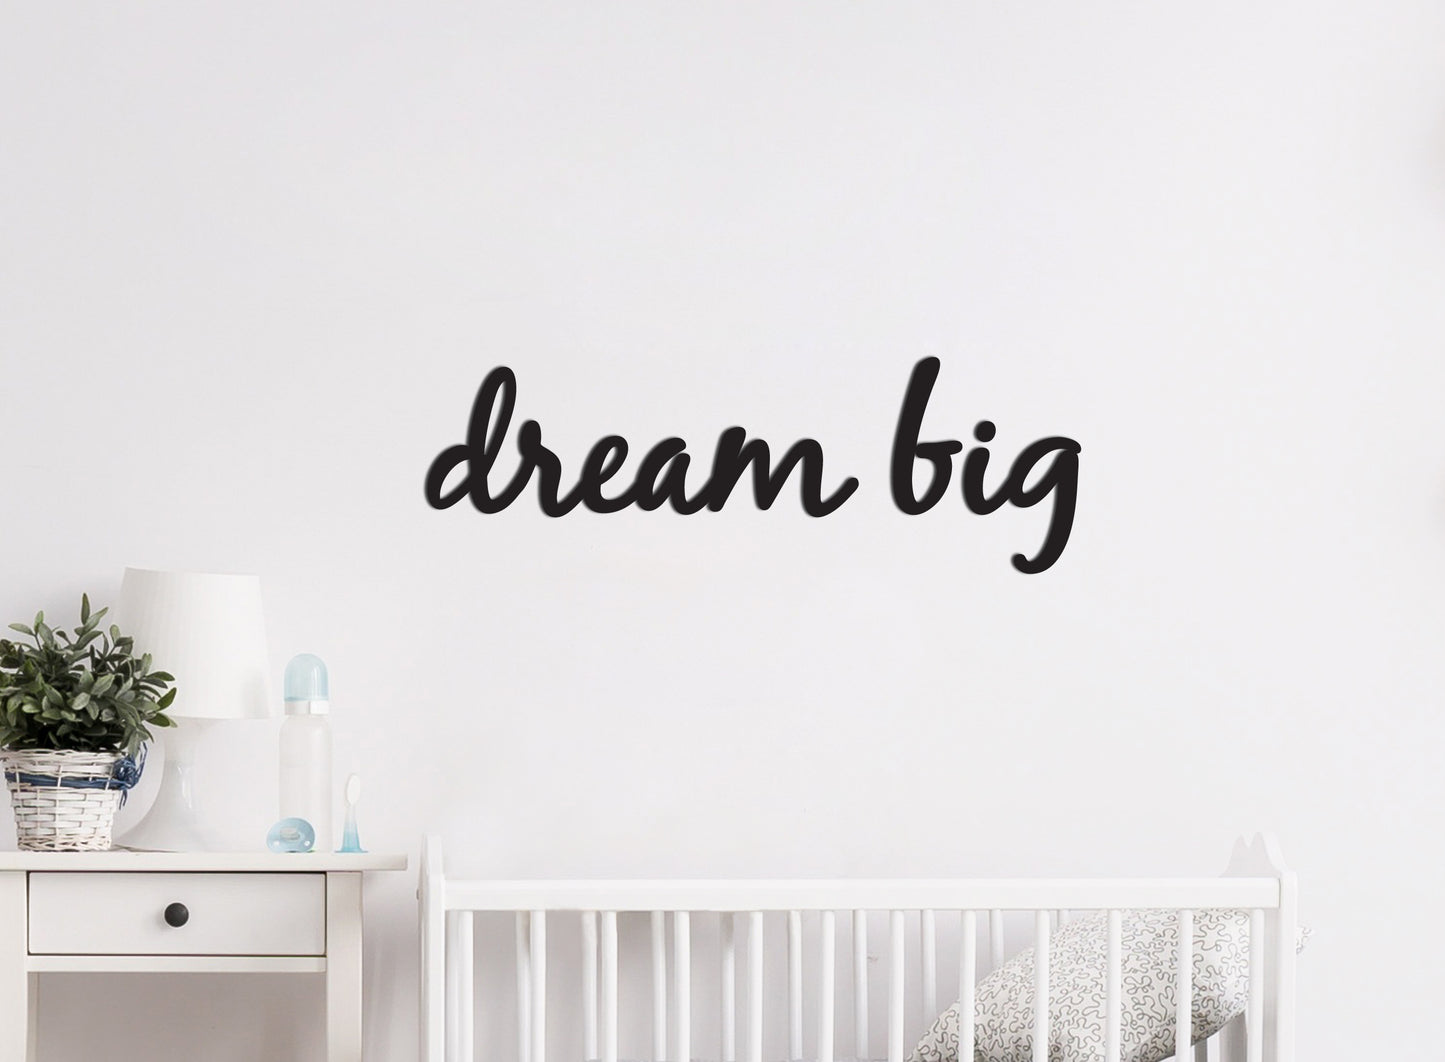 Houten Wandecoratie  voor kinderkamer - Wandtekst "dream big"